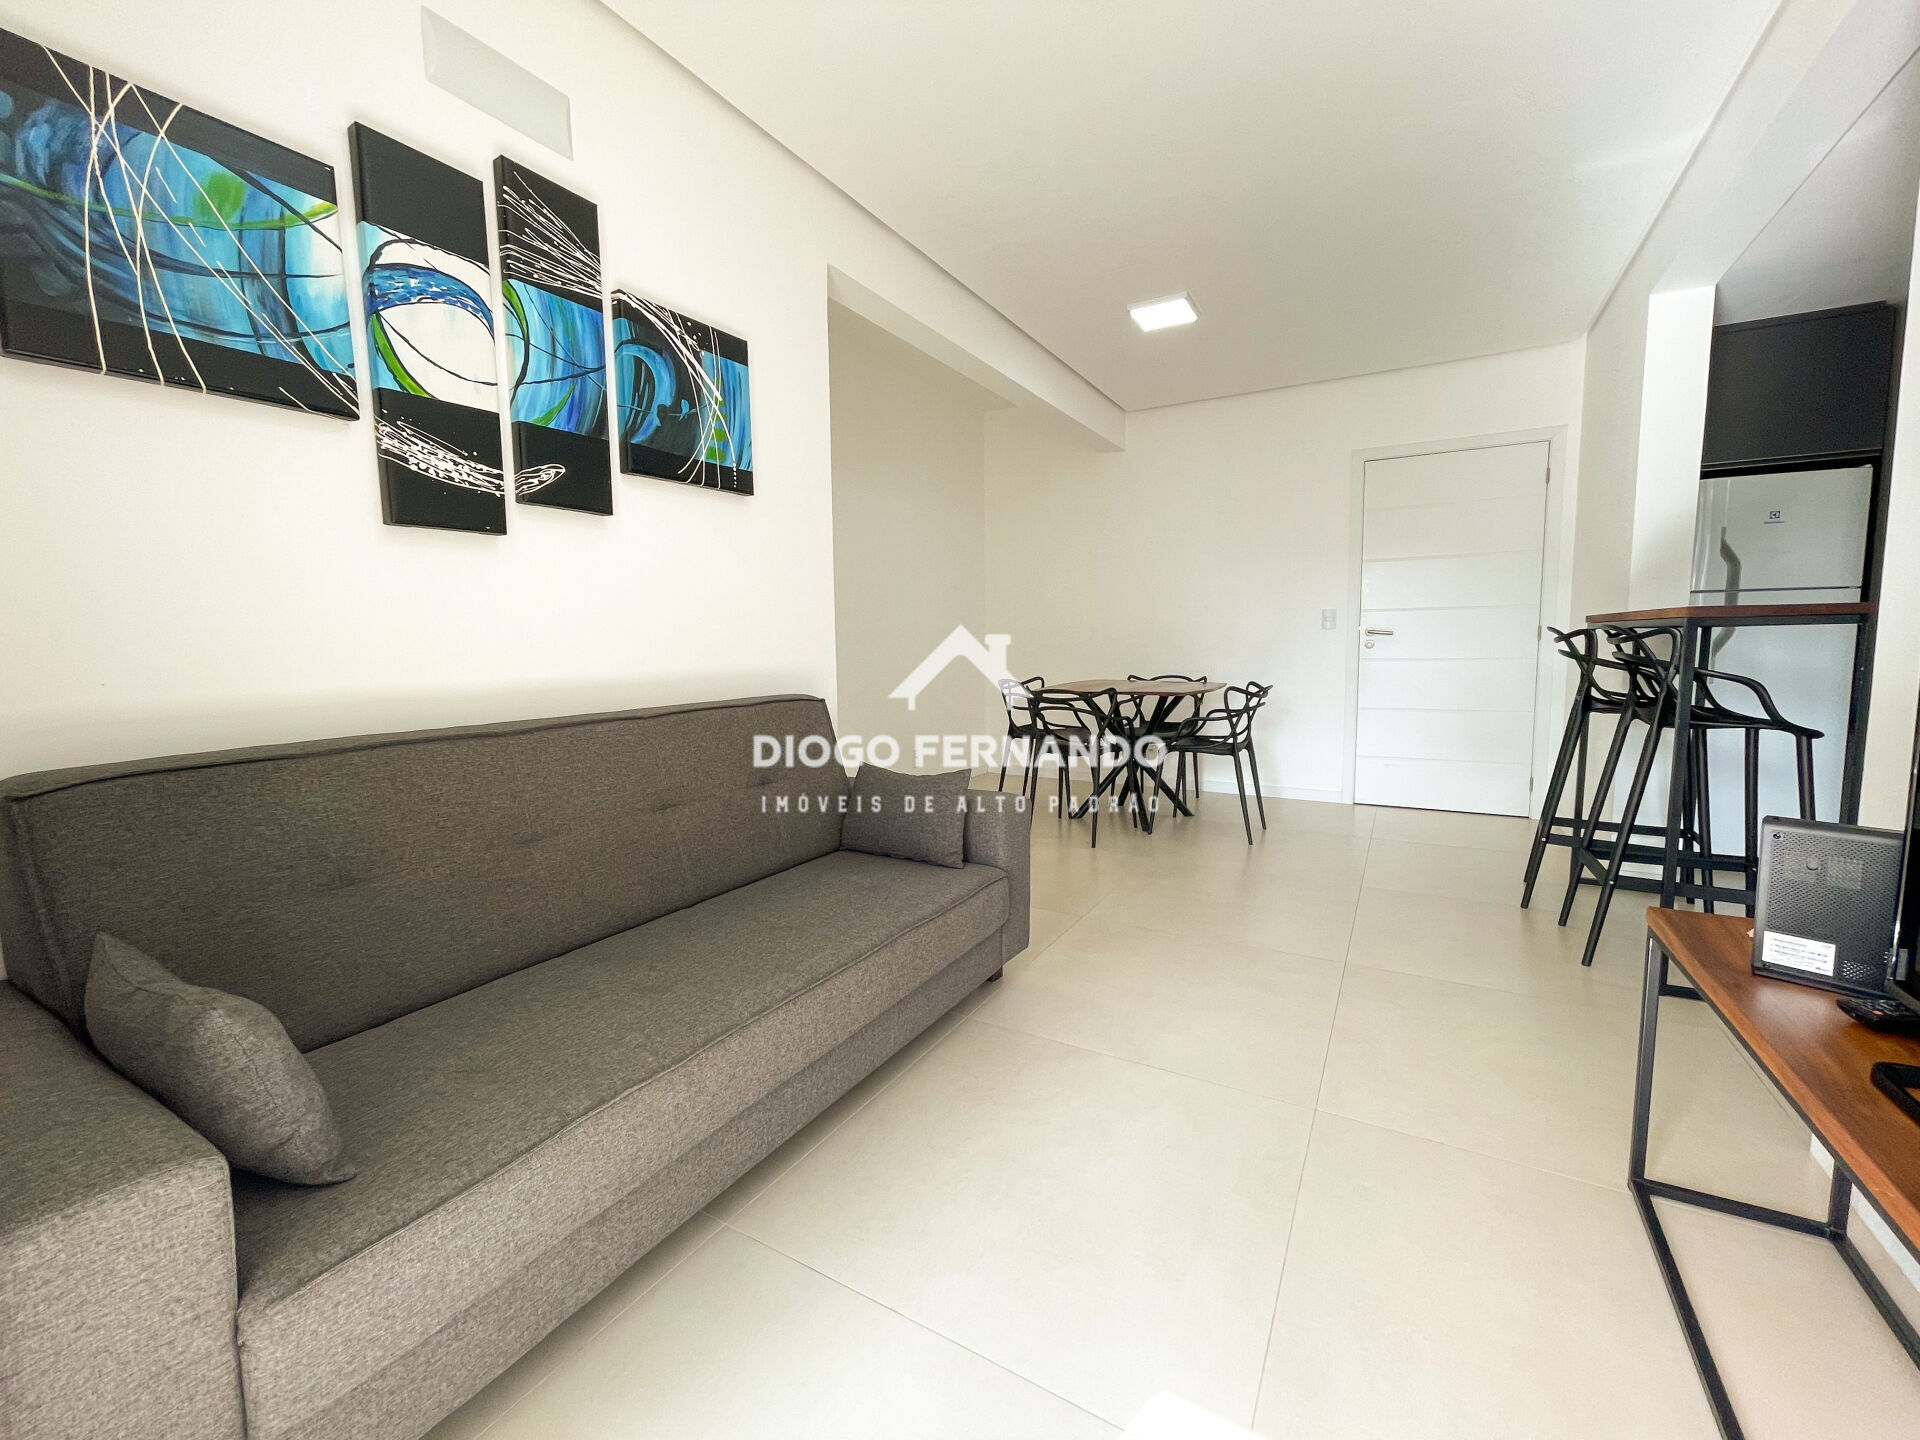 Apartamento, 2 quartos, 81 m² - Foto 2